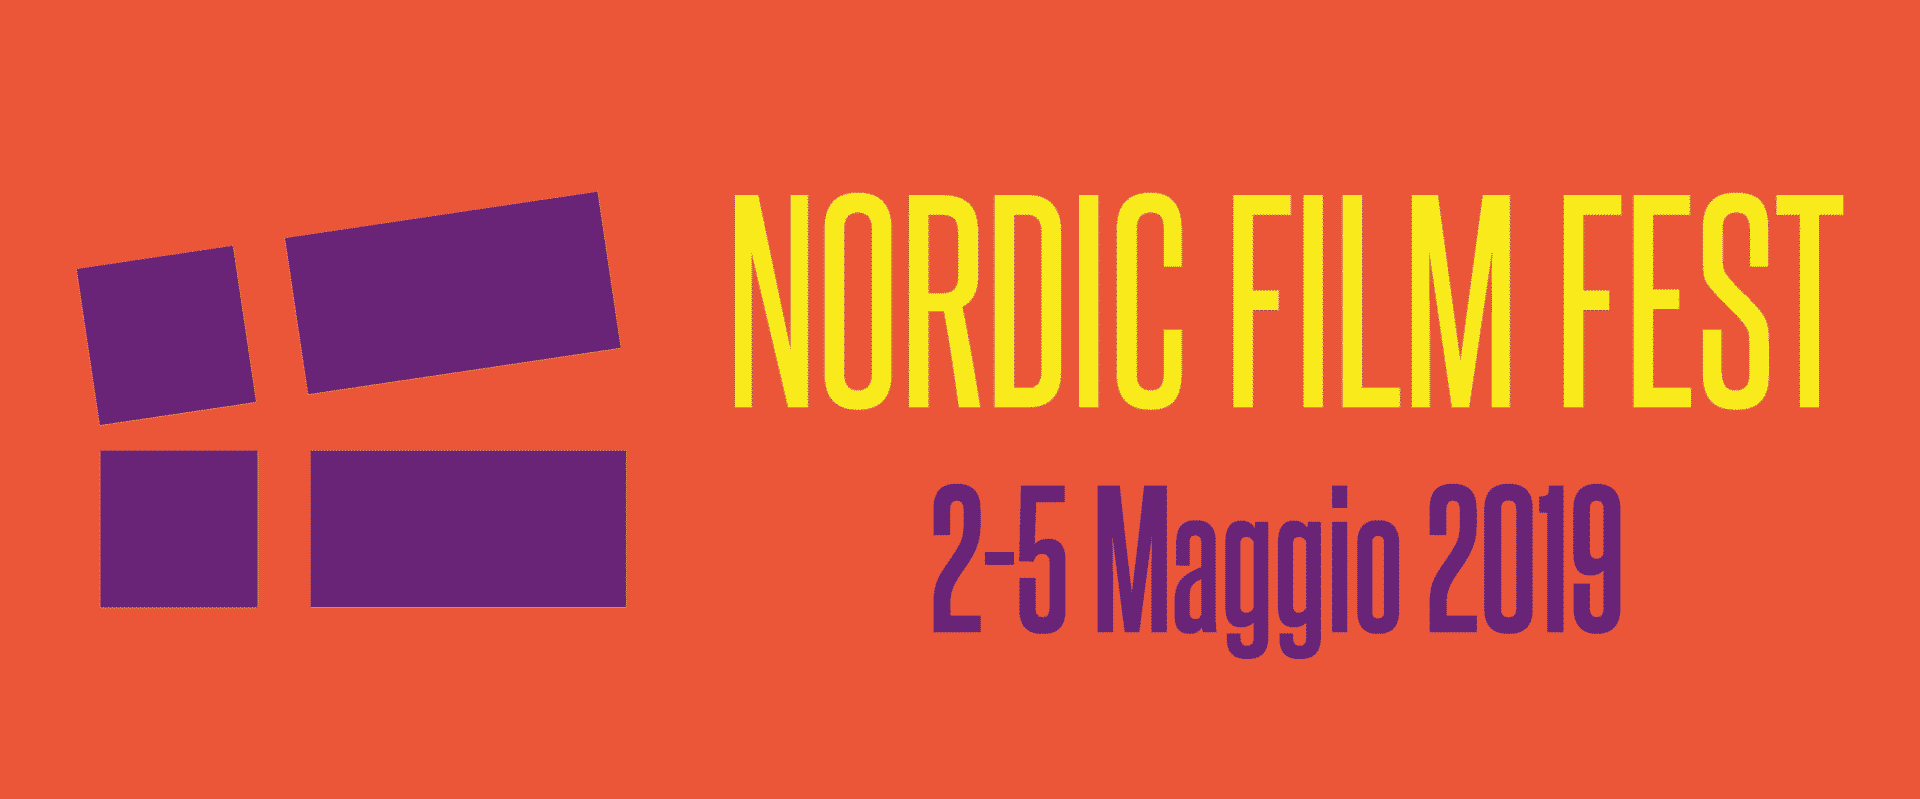 Nordic Film Fest 2019: a maggio l’ottava edizione del Festival